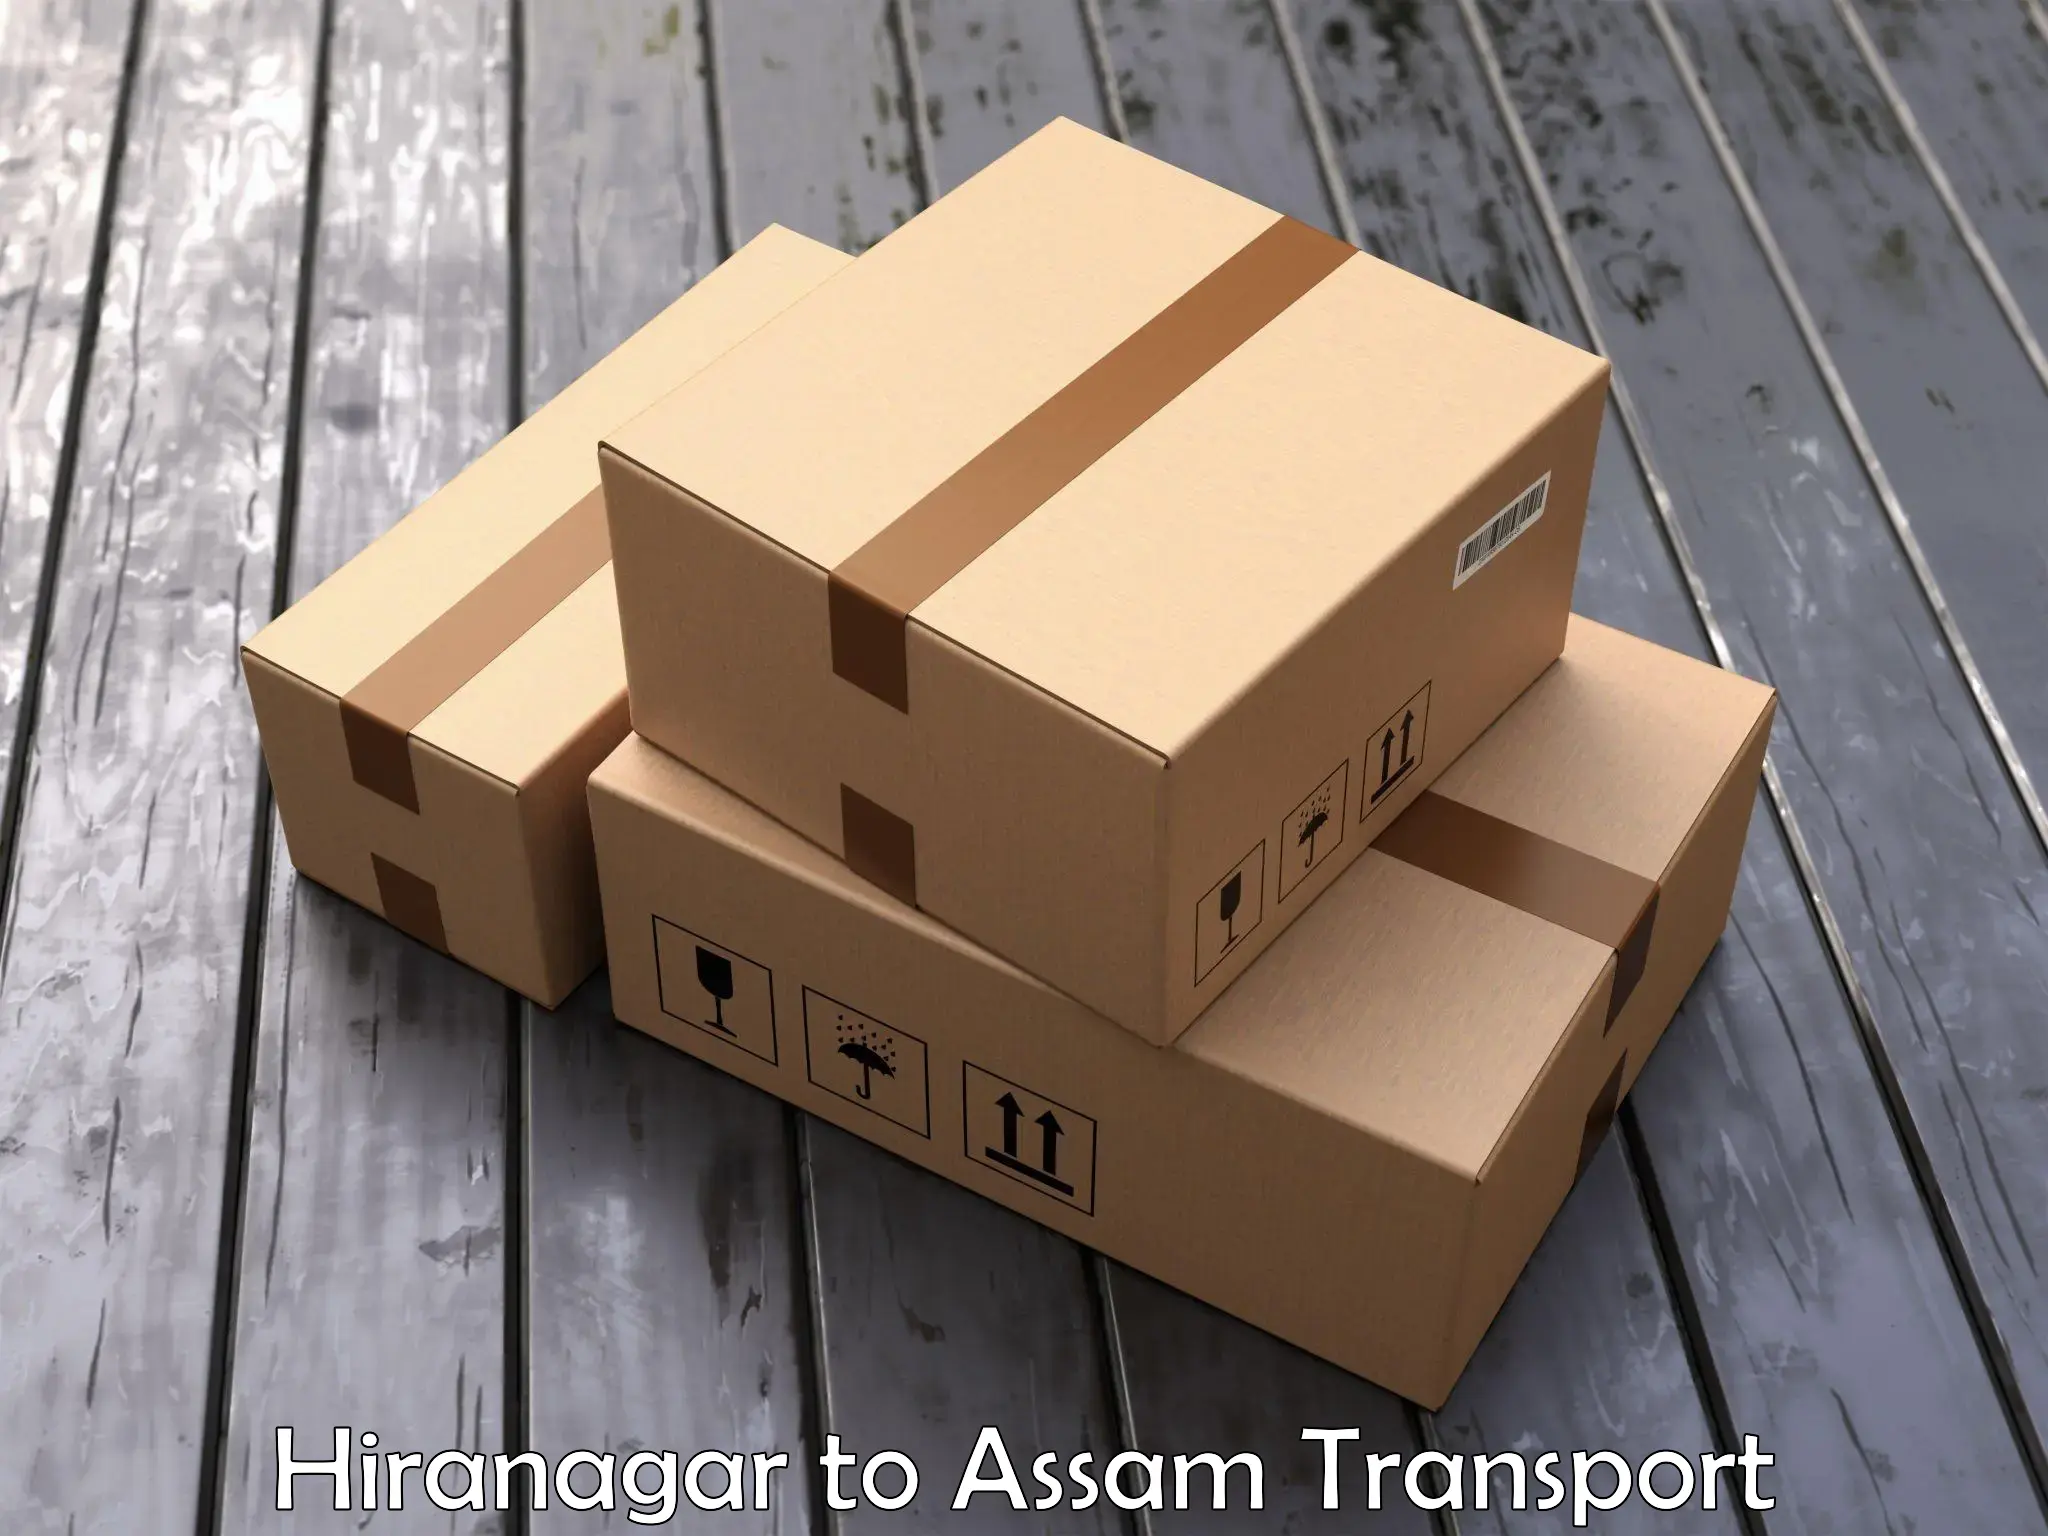 Two wheeler parcel service Hiranagar to Barpeta